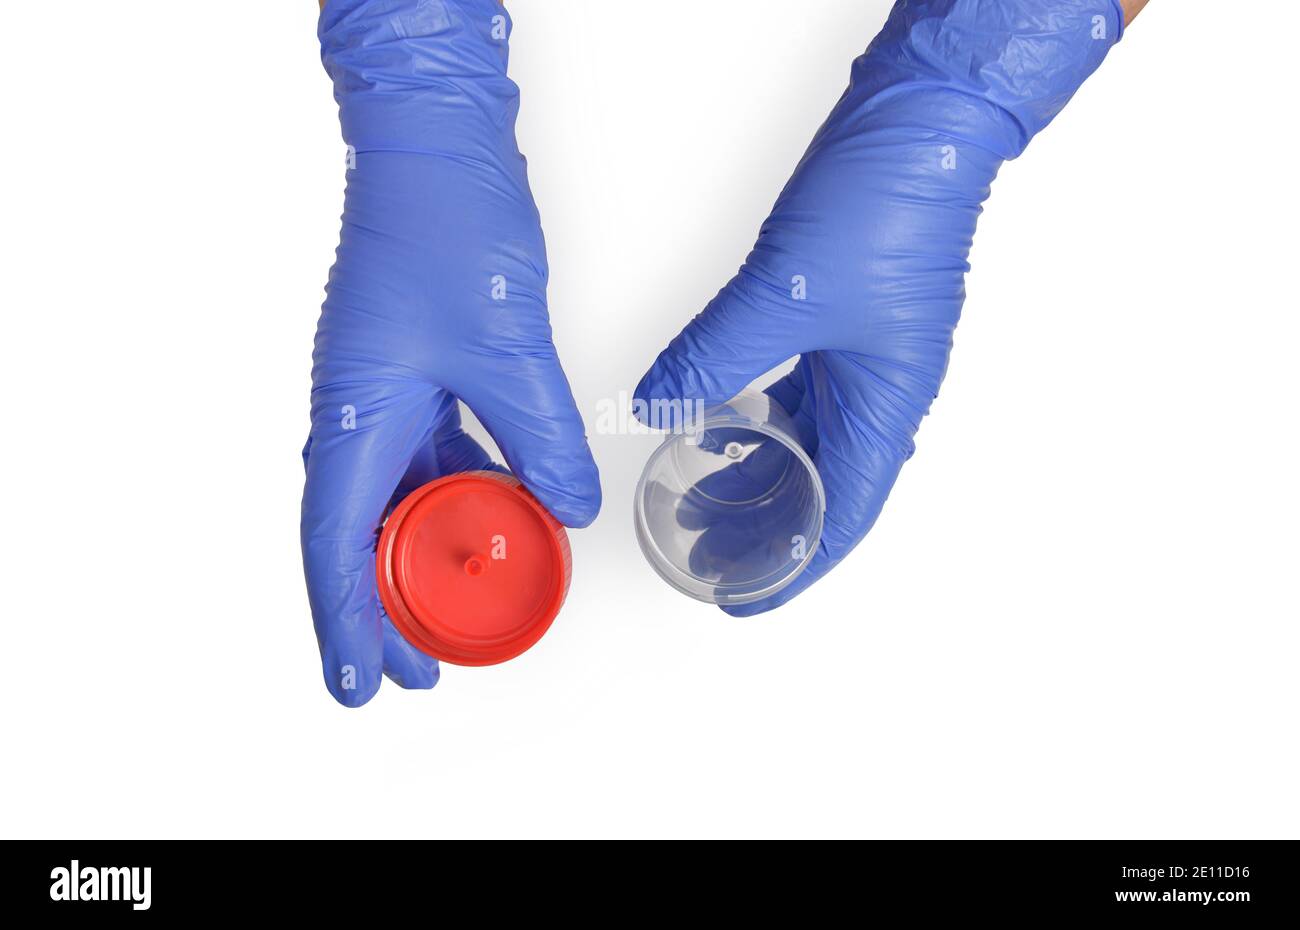 Container for analysis. Hands in blue glove holding an empty container for analysis. Drug test concept. coronavirus. urinalysis. Stock Photo